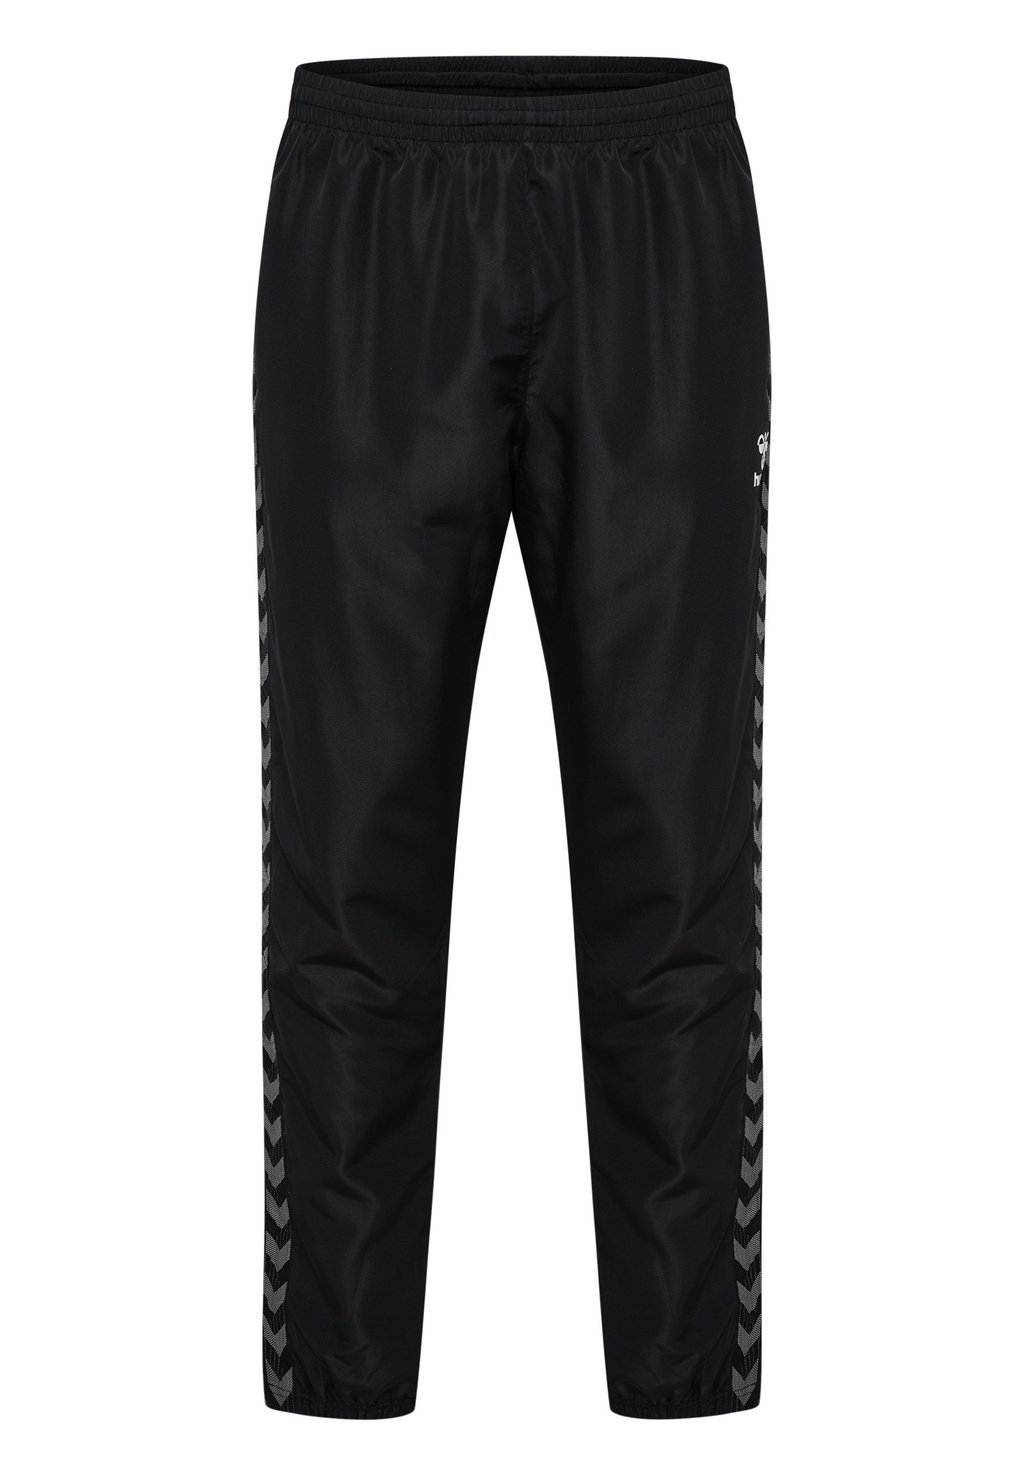 Спортивные штаны AUTHENTIC MICRO Hummel, цвет black спортивные брюки 3 4 authentic hummel цвет black